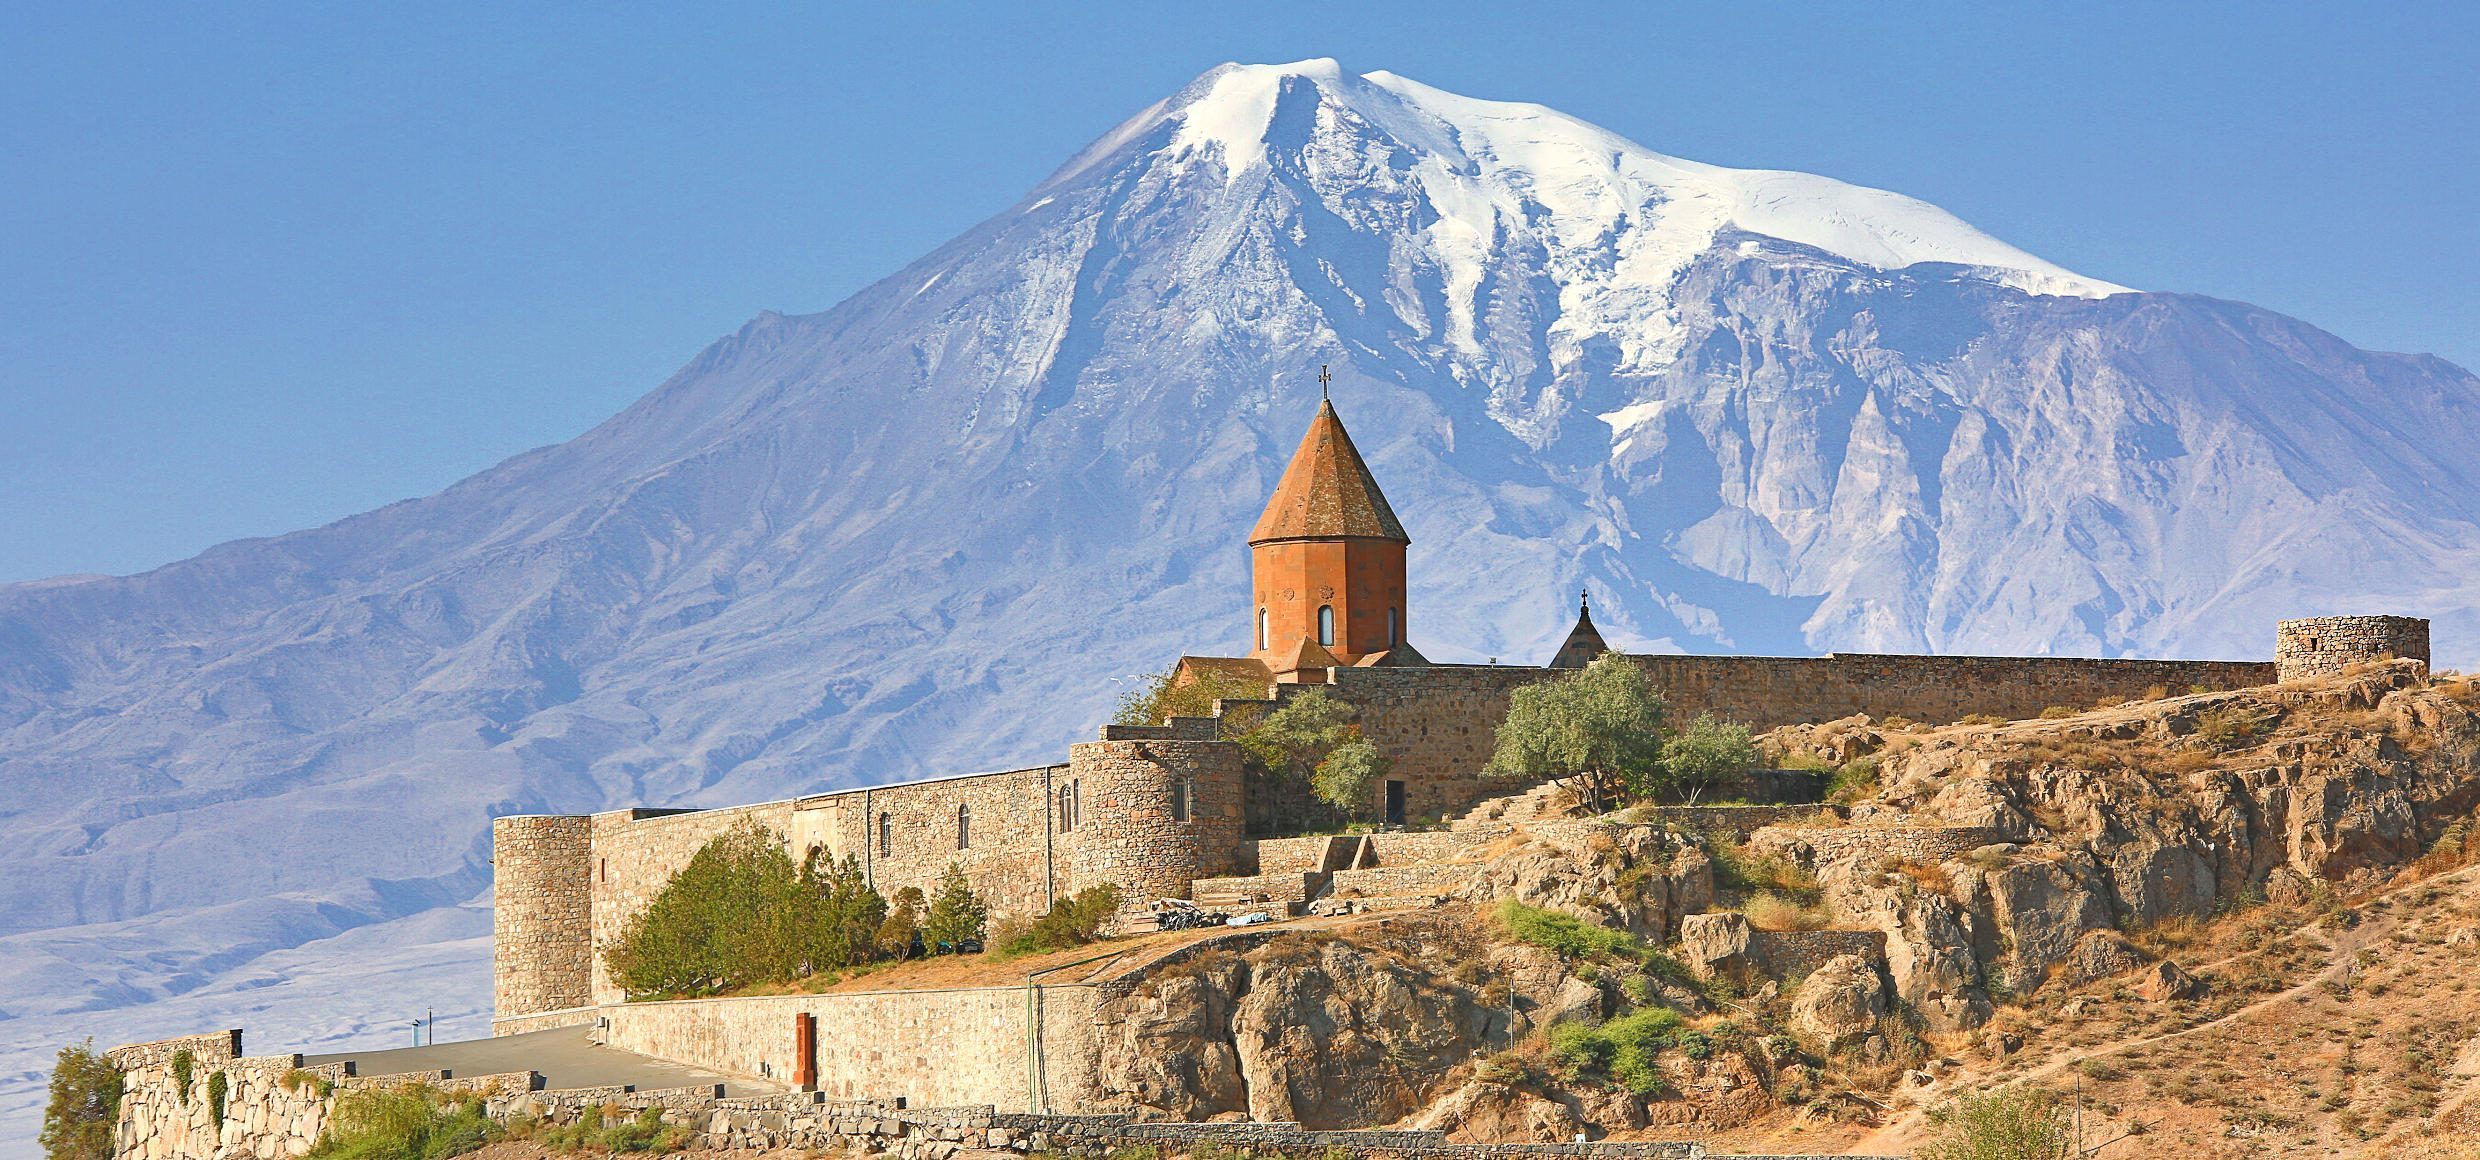 Kloster-Khor-Virap-Berg-Ararat-Amenien